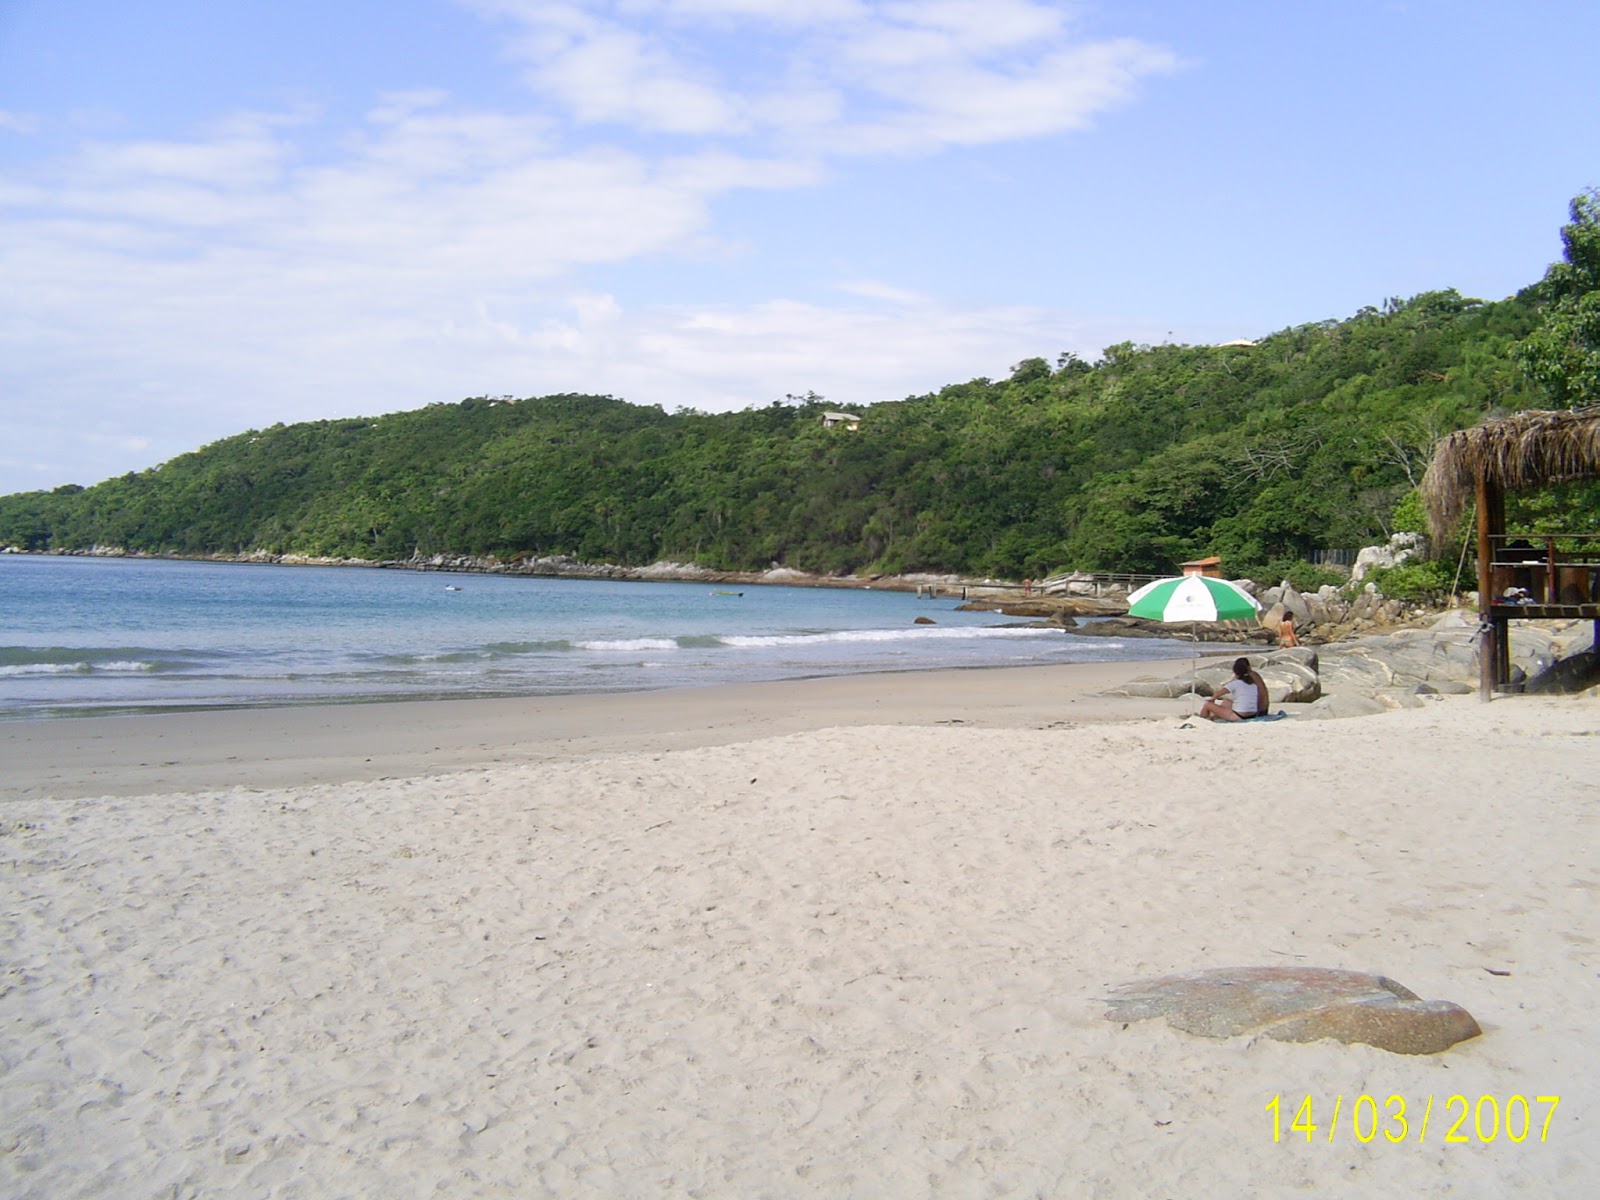 Praia do Estaleiro'in fotoğrafı vahşi alan